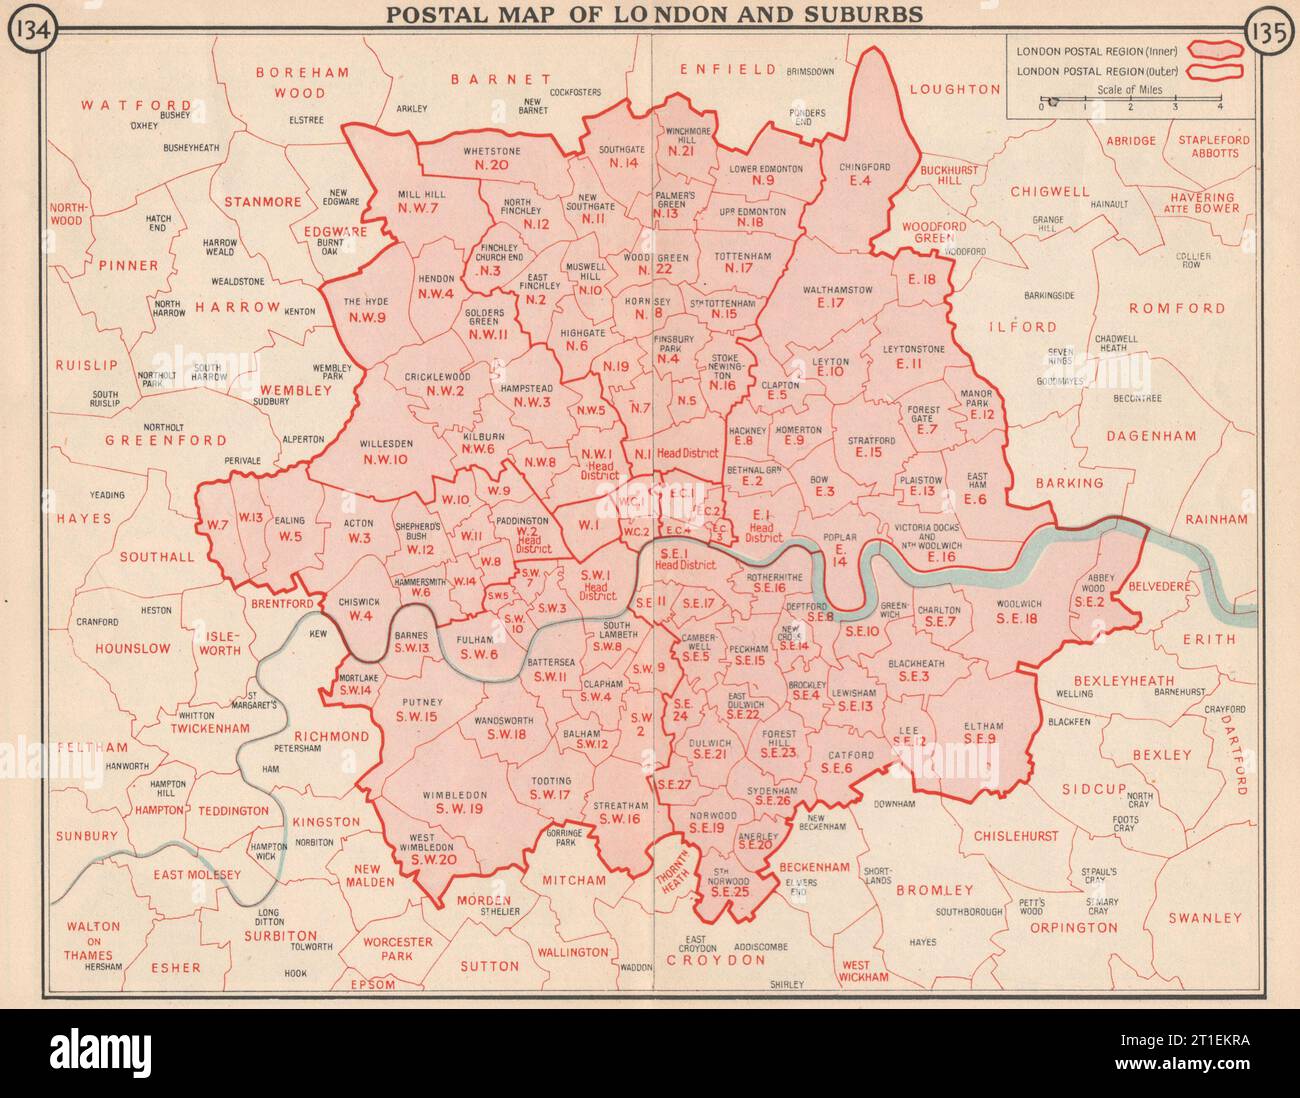 Carte postale de Londres et de ses banlieues. Codes postaux. Régions postales. Codes postaux 1953 Banque D'Images